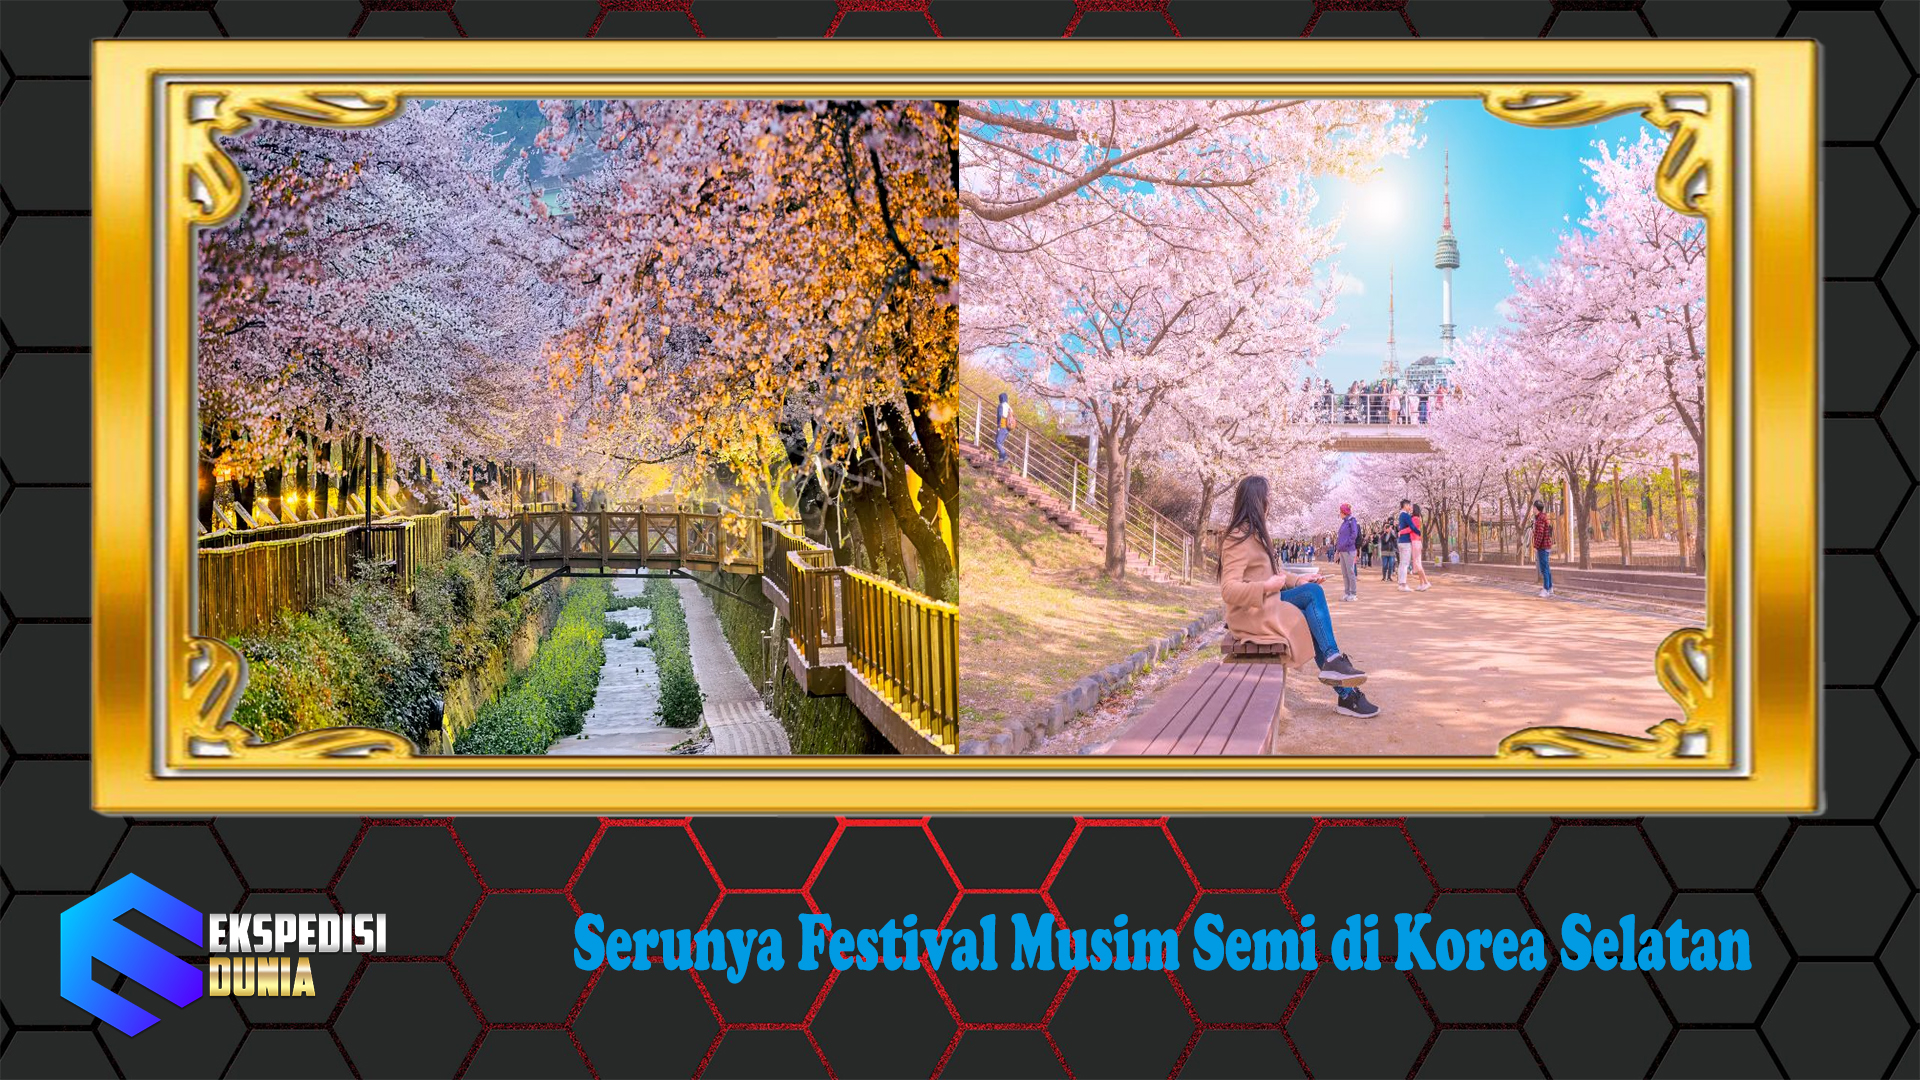 Serunya Festival Musim Semi di Korea Selatan